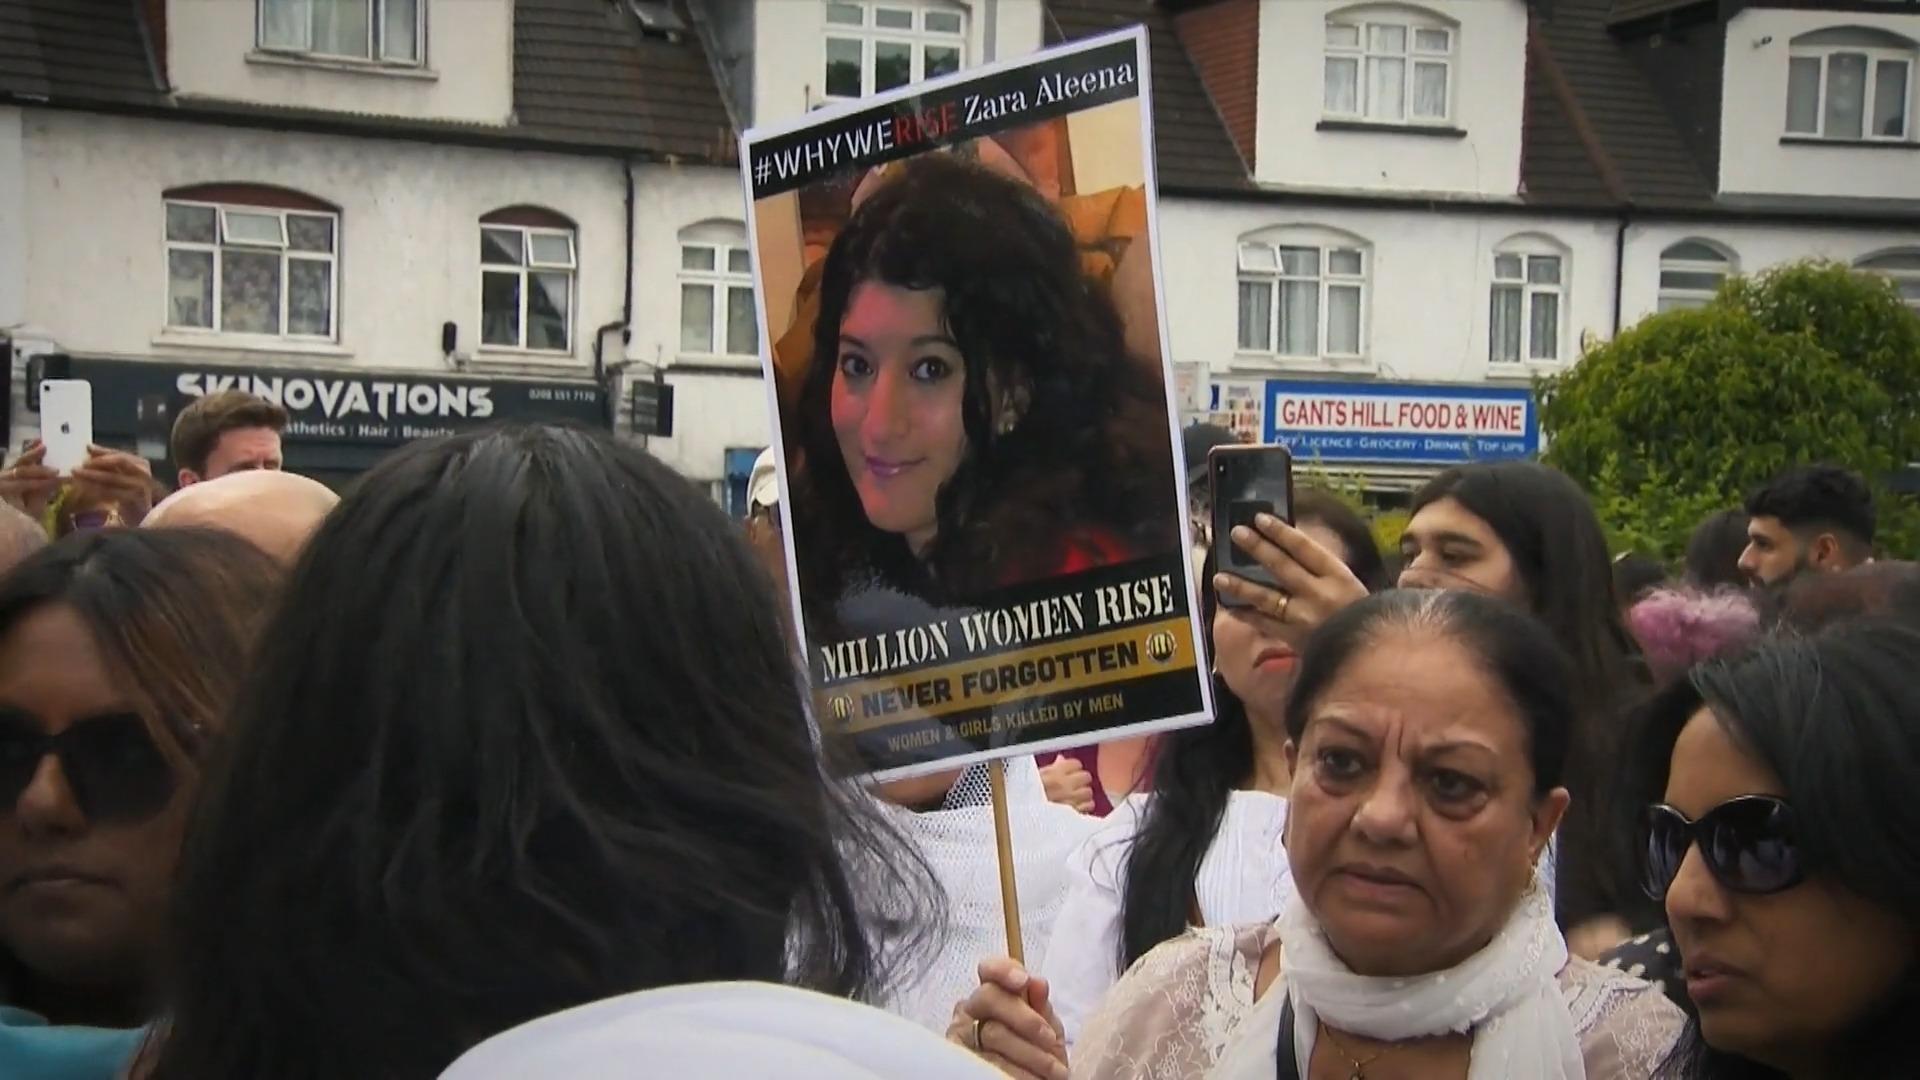 Zara Aleena: Erneuter Frauenmord erschüttert London Mord an erfolgreicher junger Frau